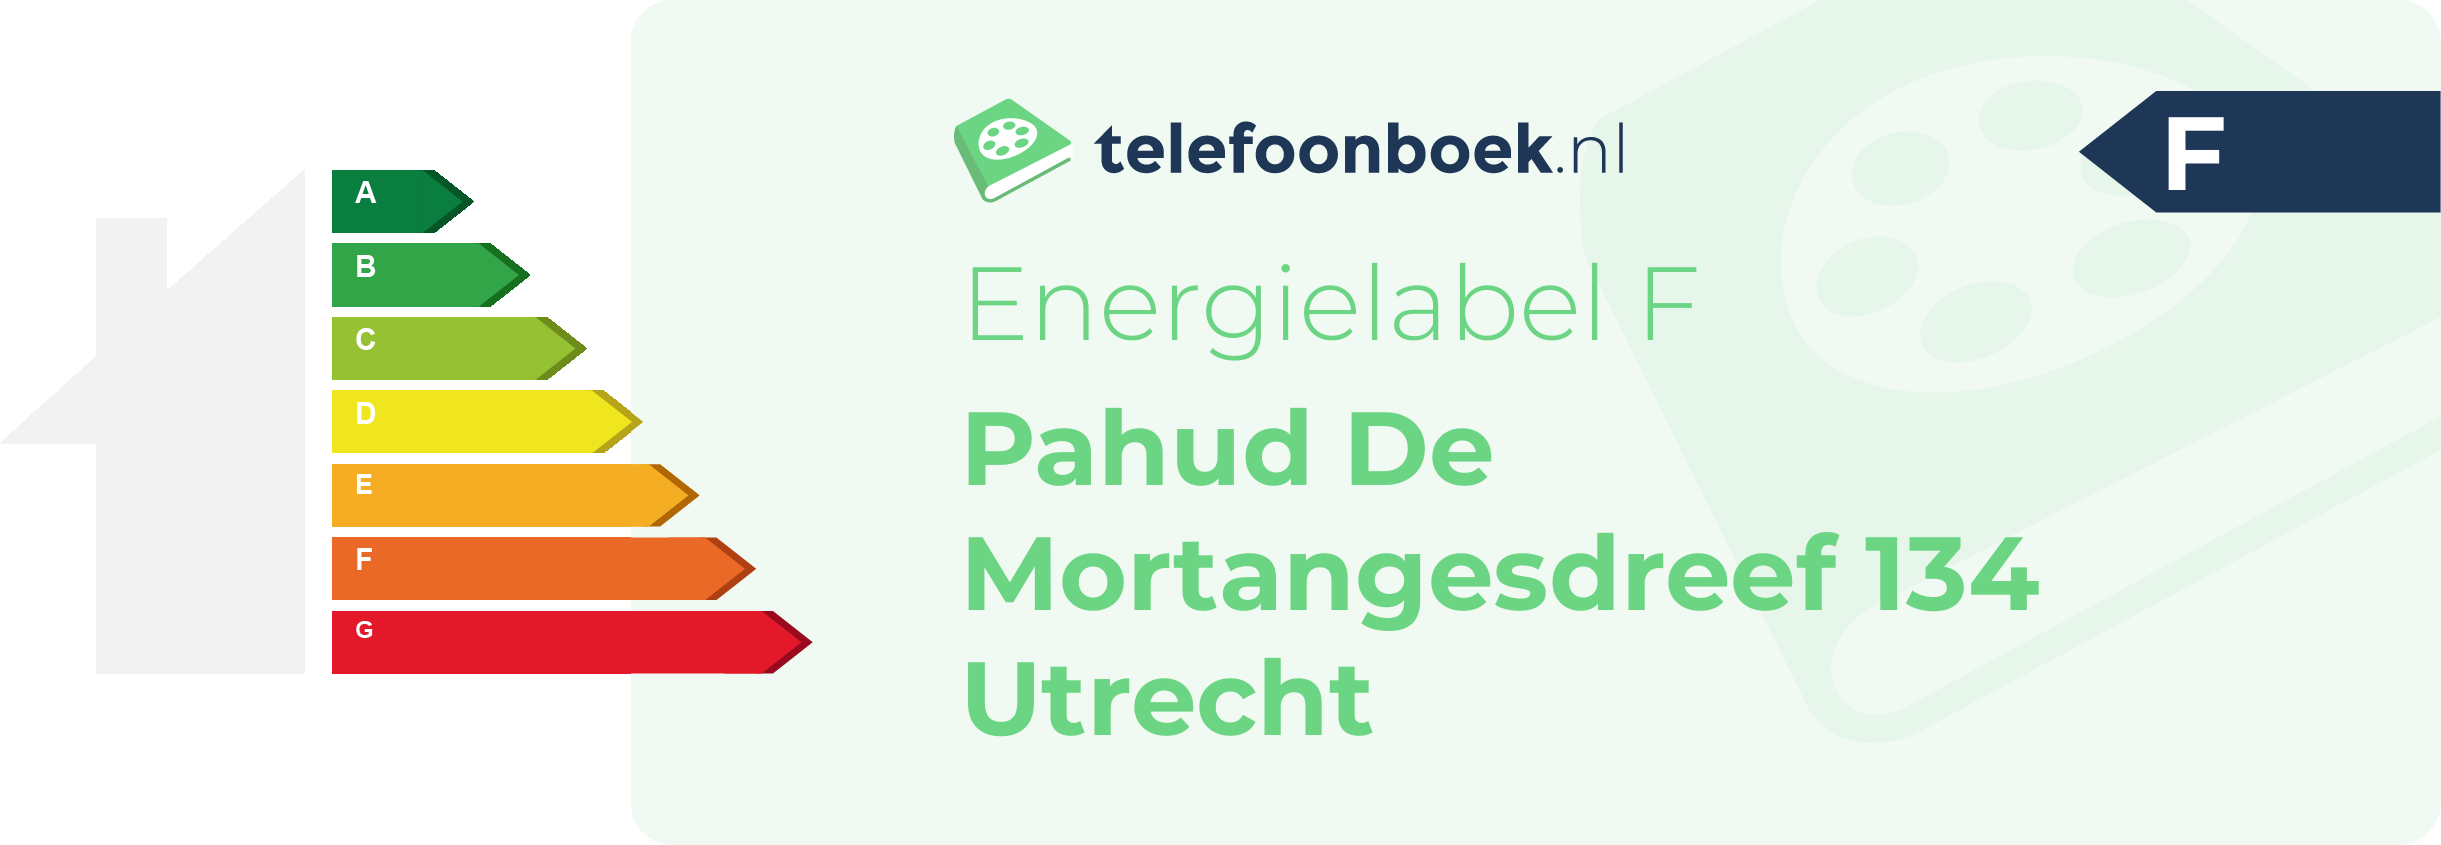 Energielabel Pahud De Mortangesdreef 134 Utrecht